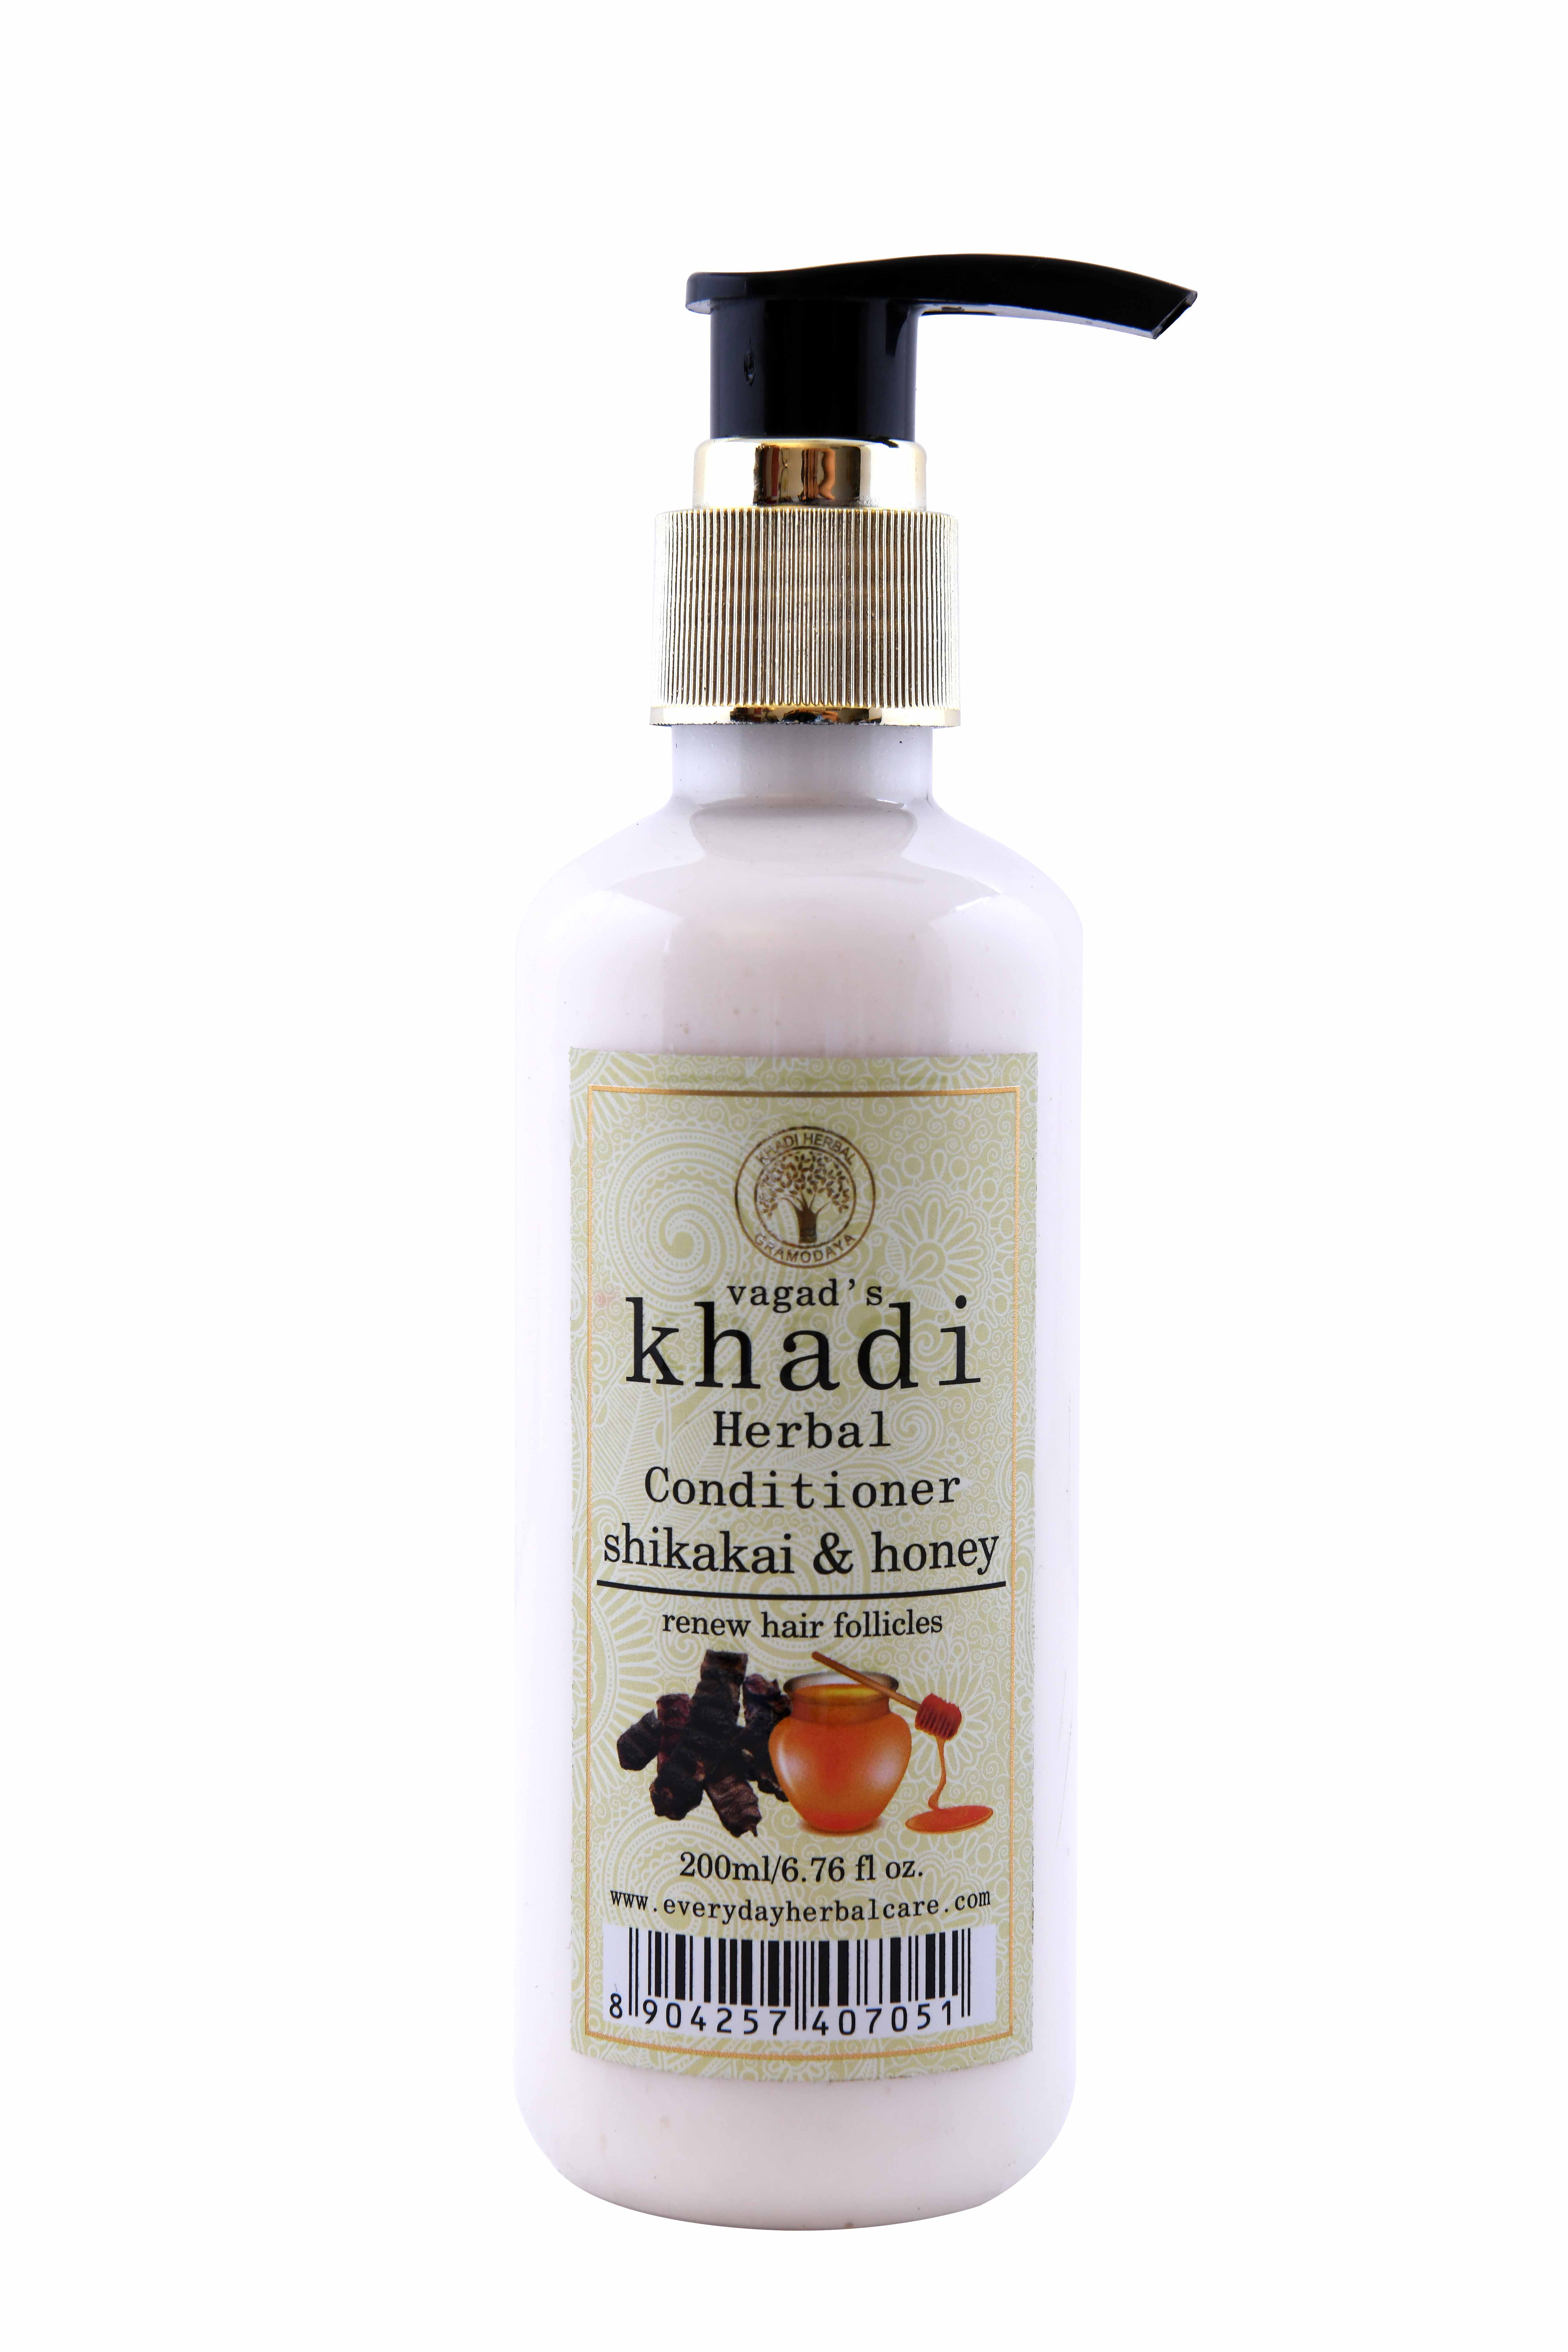 Buy Vagad's Khadi Shikakai And Honey Conditioner at Best Price Online